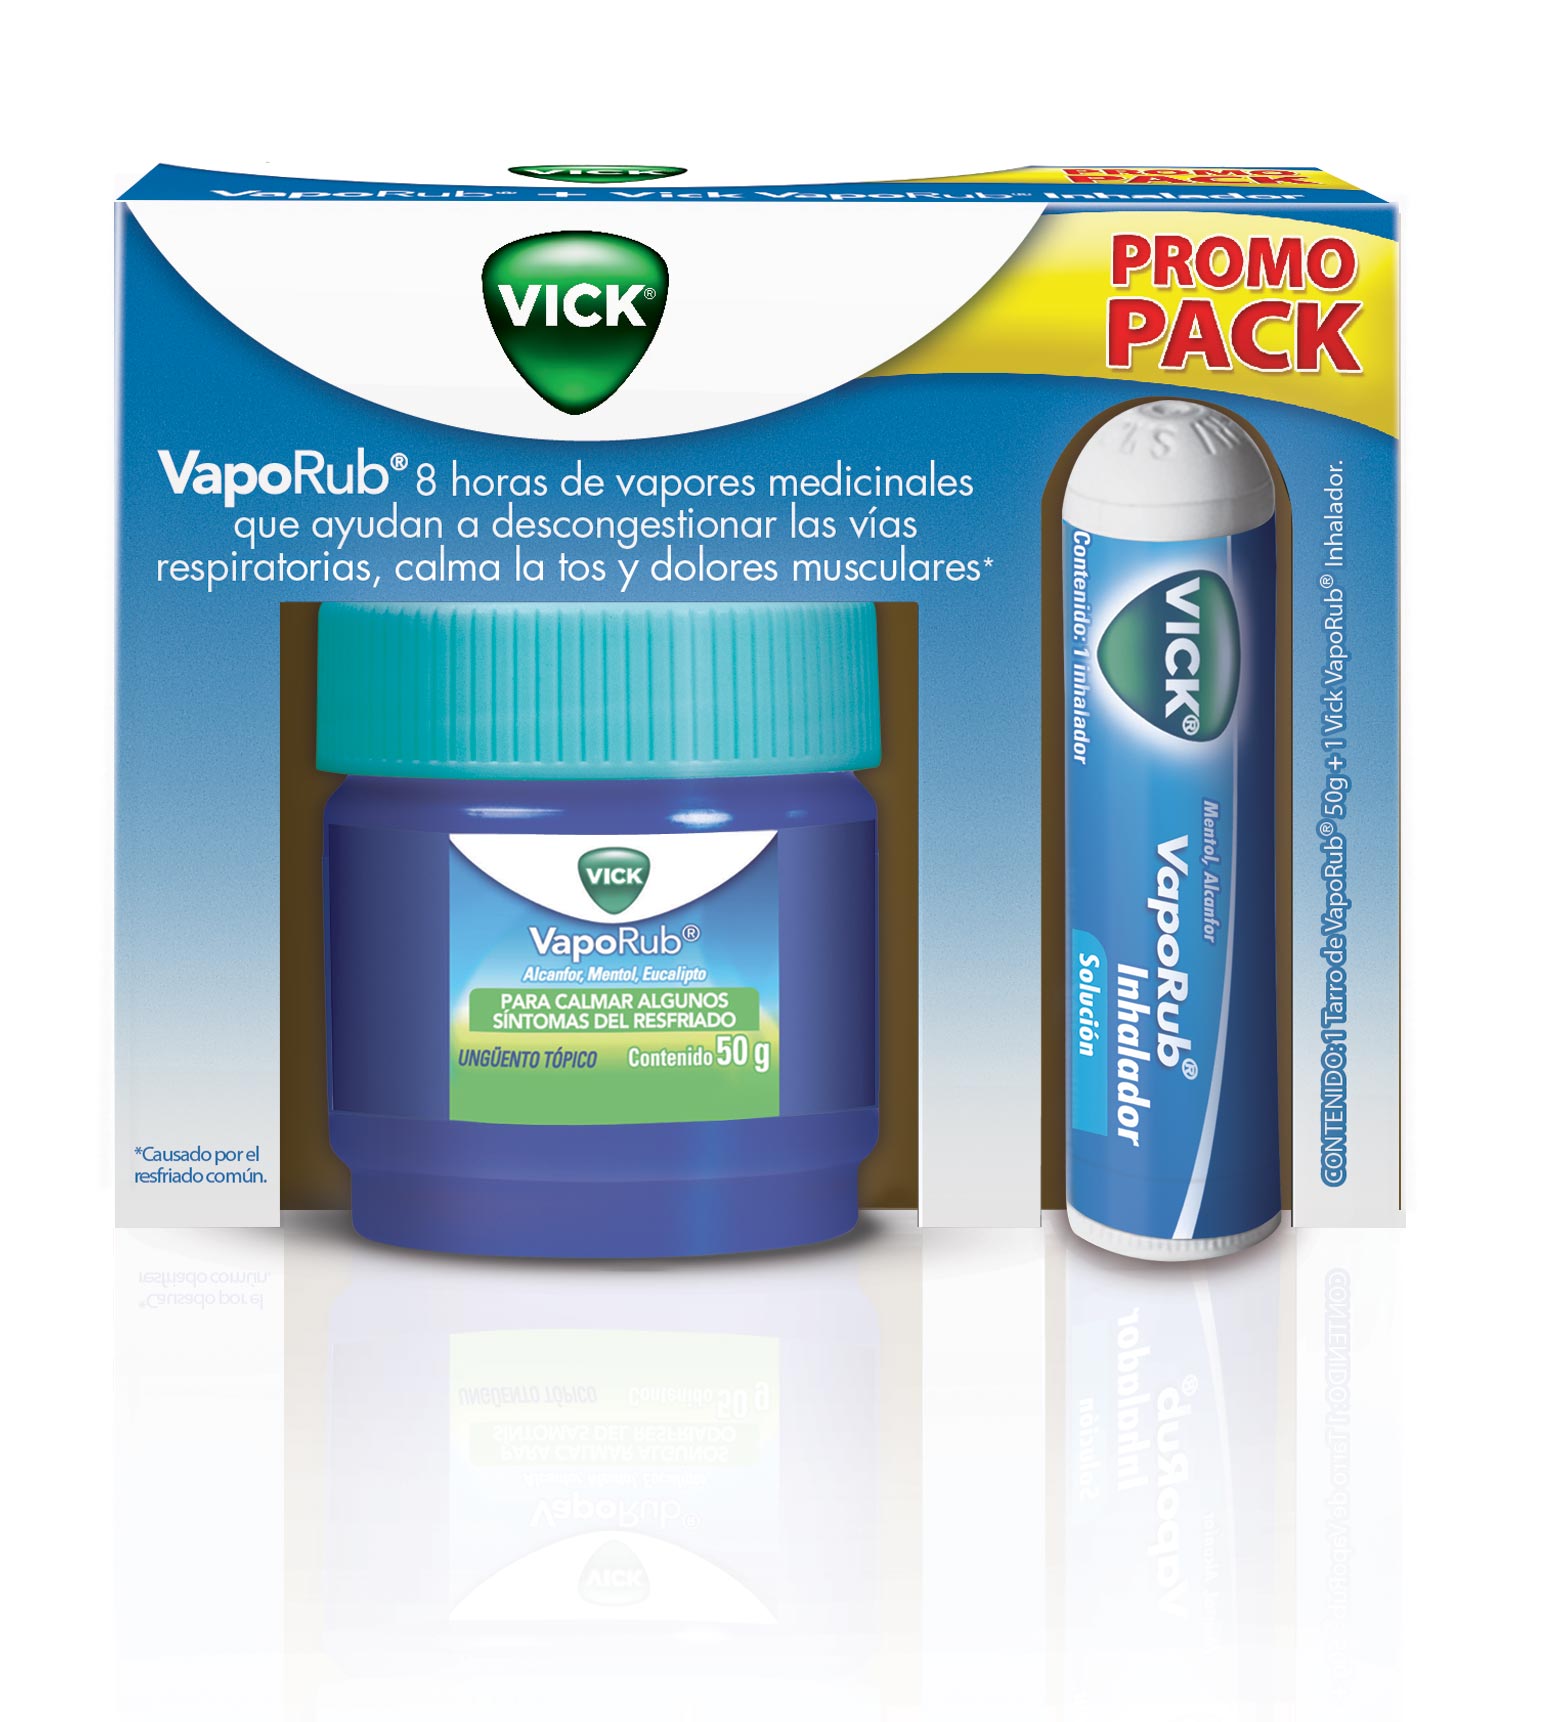 Vick - Pack Vaporub Inhalador, para Resfriado, con Aroma a Mentol